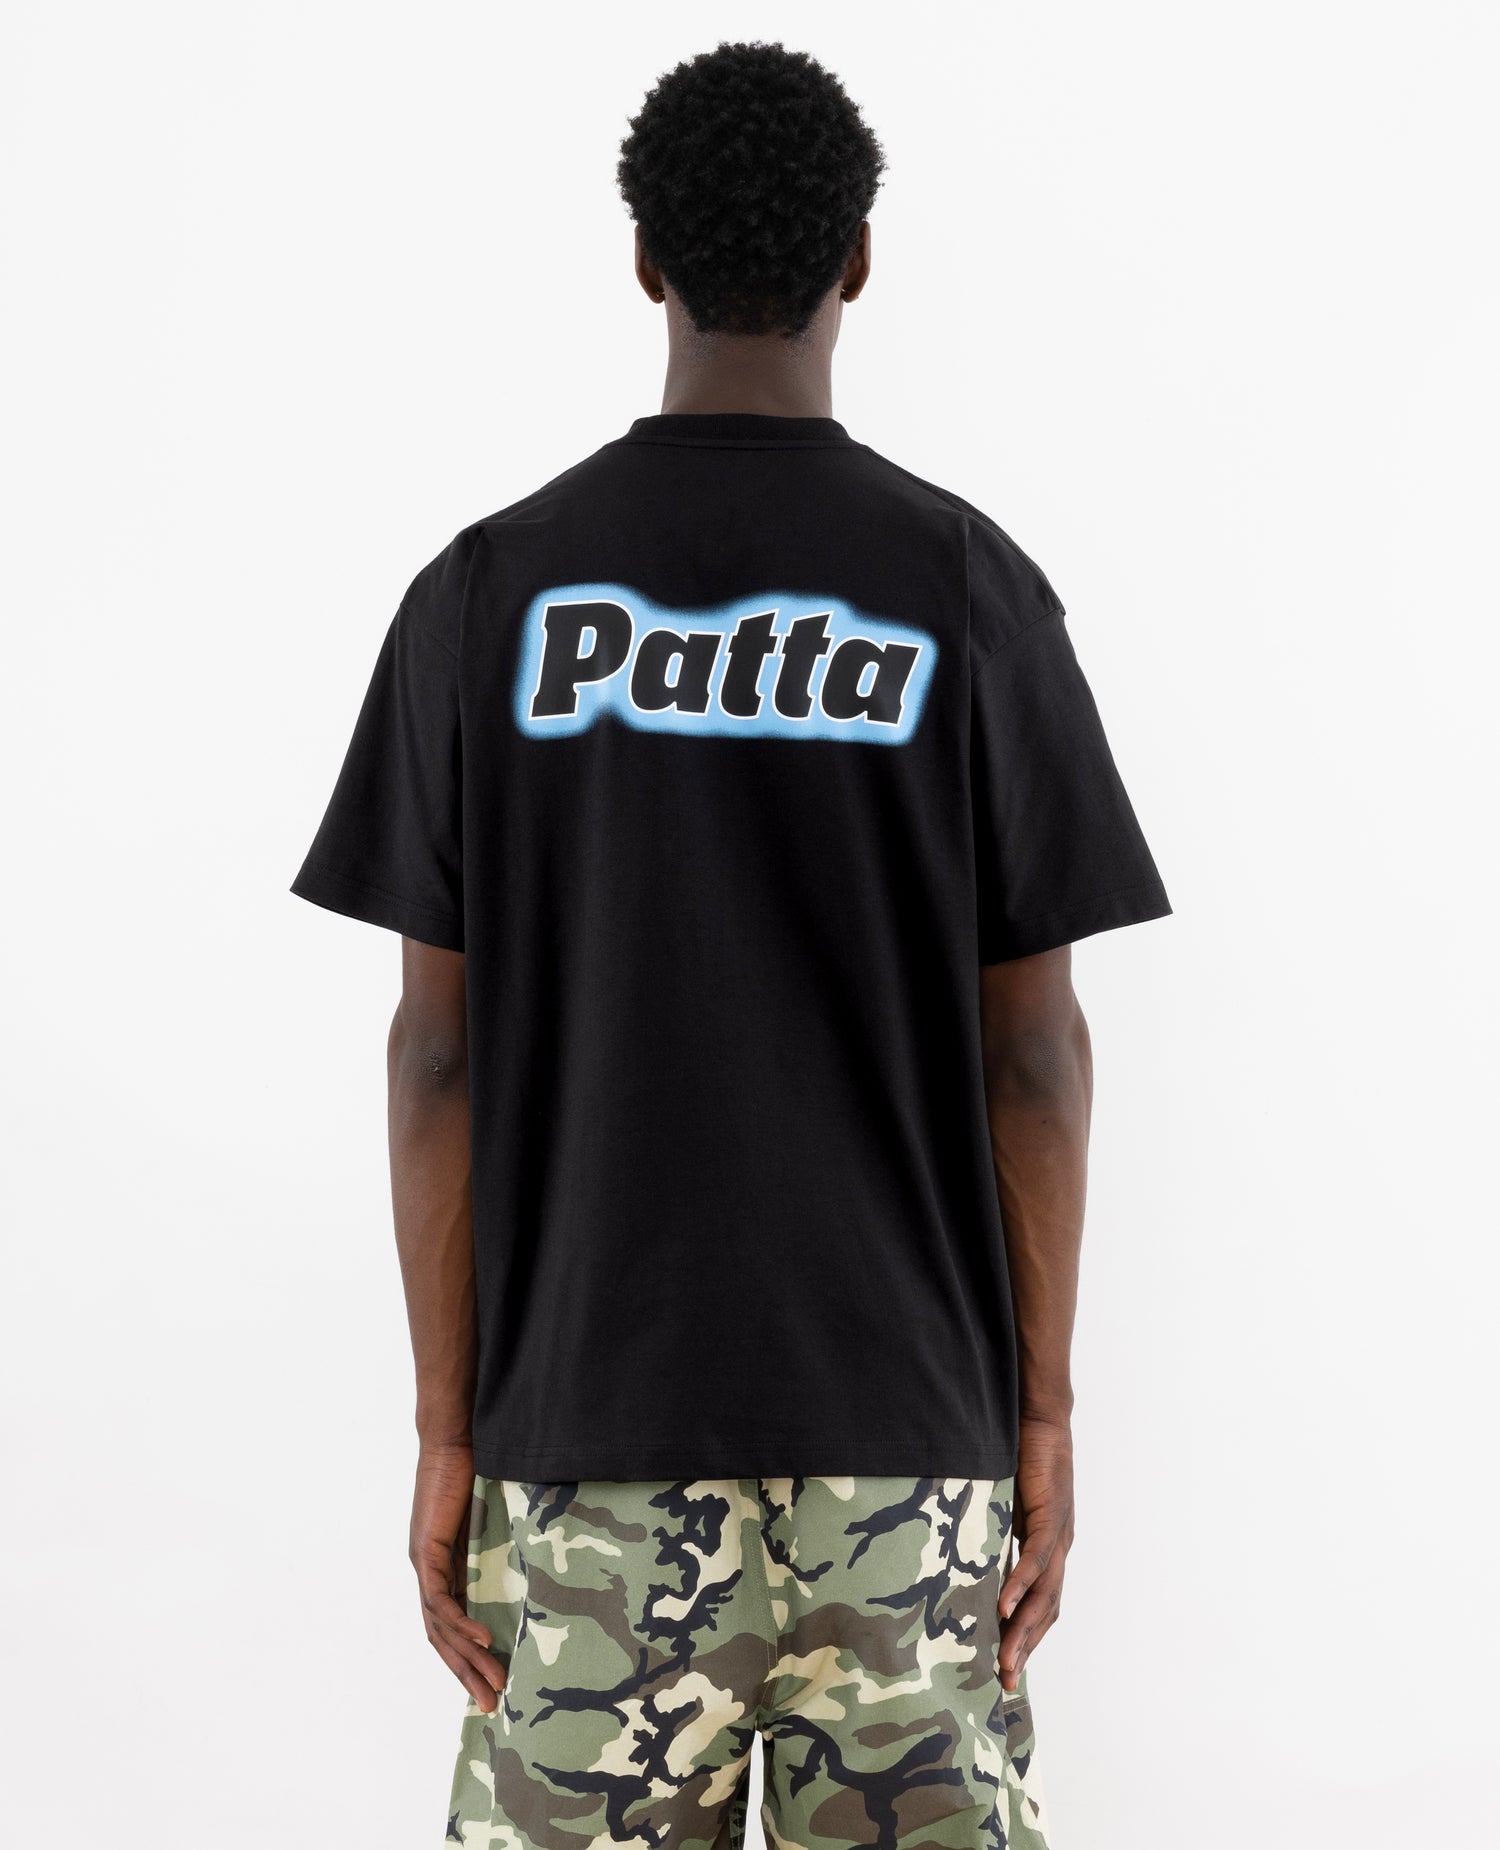 T-shirt Patta, importa cosa pensi (nera)